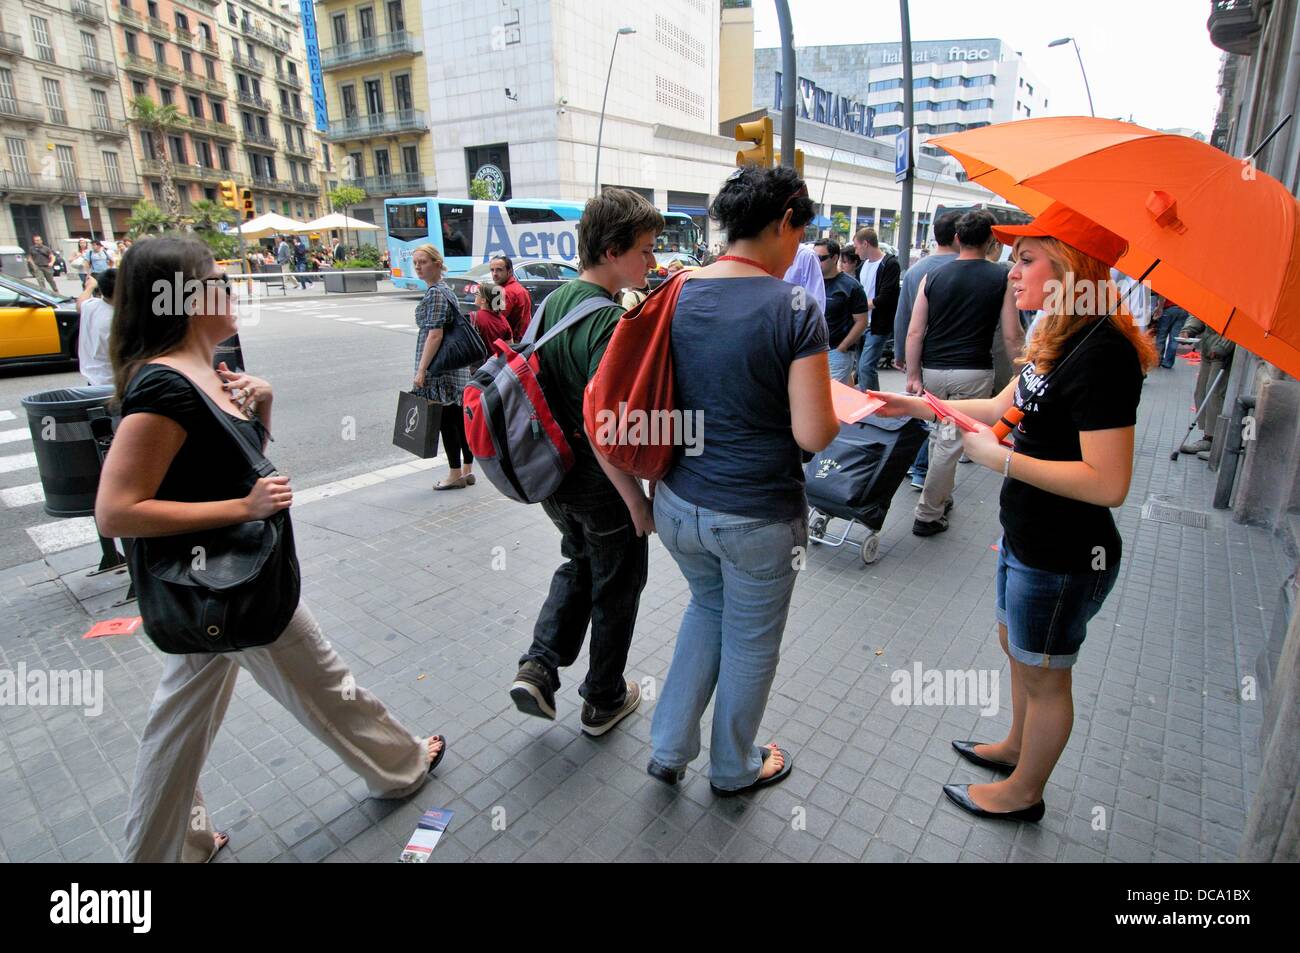 Chica con paraguas naranja distribuir publicidad. La calle Pelai.  Barcelona. Cataluña. España Fotografía de stock - Alamy